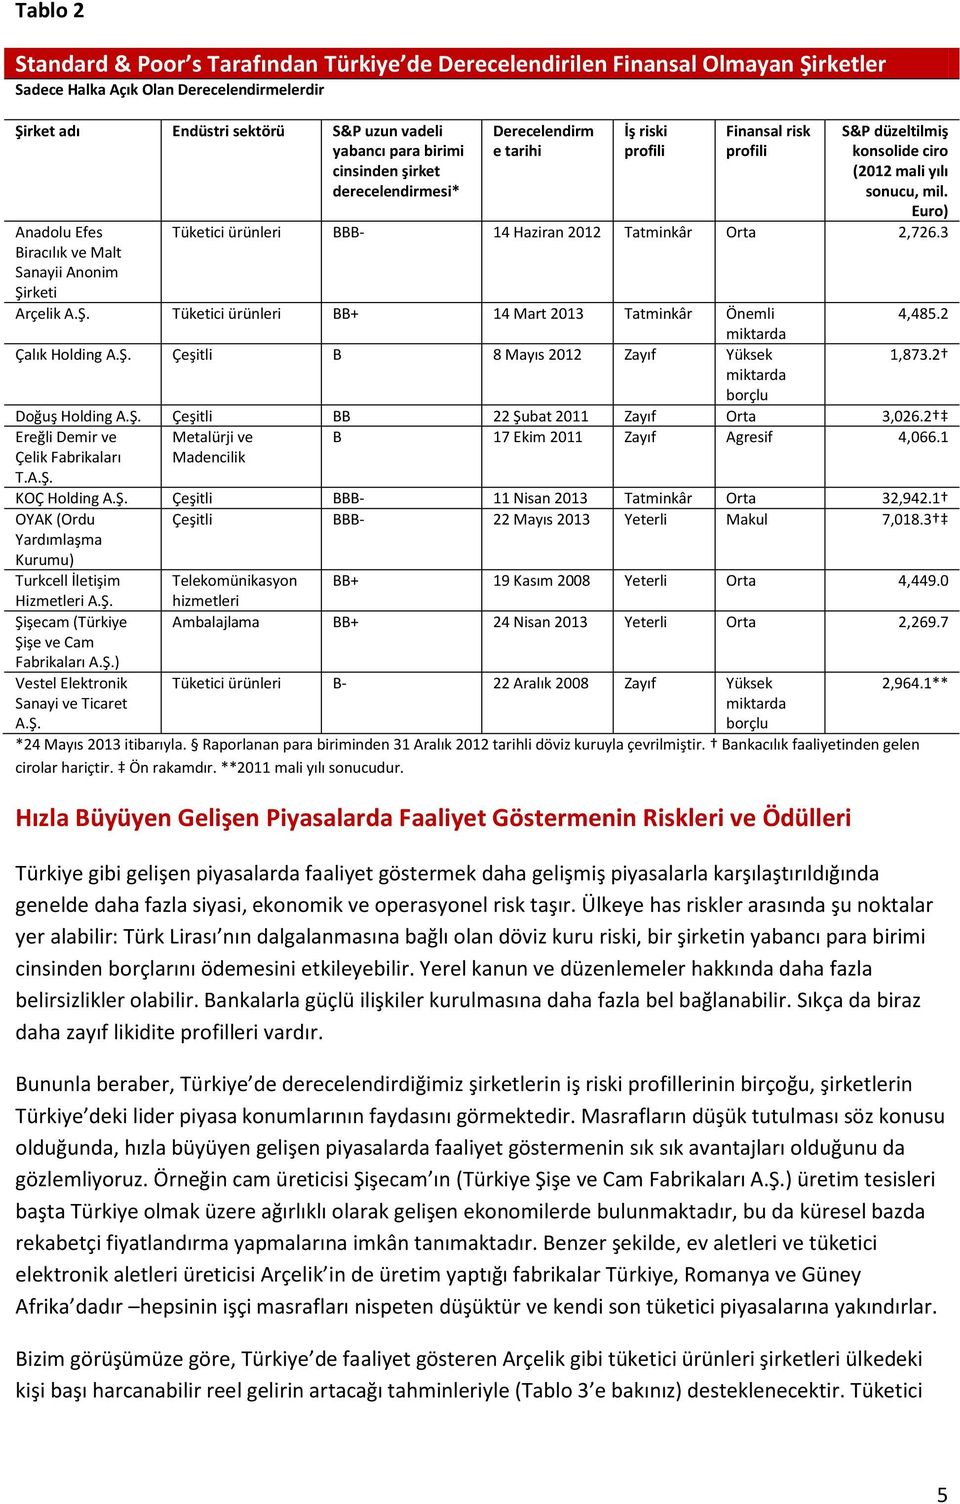 Euro) Anadolu Efes Tüketici ürünleri BBB- 14 Haziran 2012 Tatminkâr Orta 2,726.3 Biracılık ve Malt Sanayii Anonim Şirketi Arçelik A.Ş. Tüketici ürünleri BB+ 14 Mart 2013 Tatminkâr Önemli 4,485.